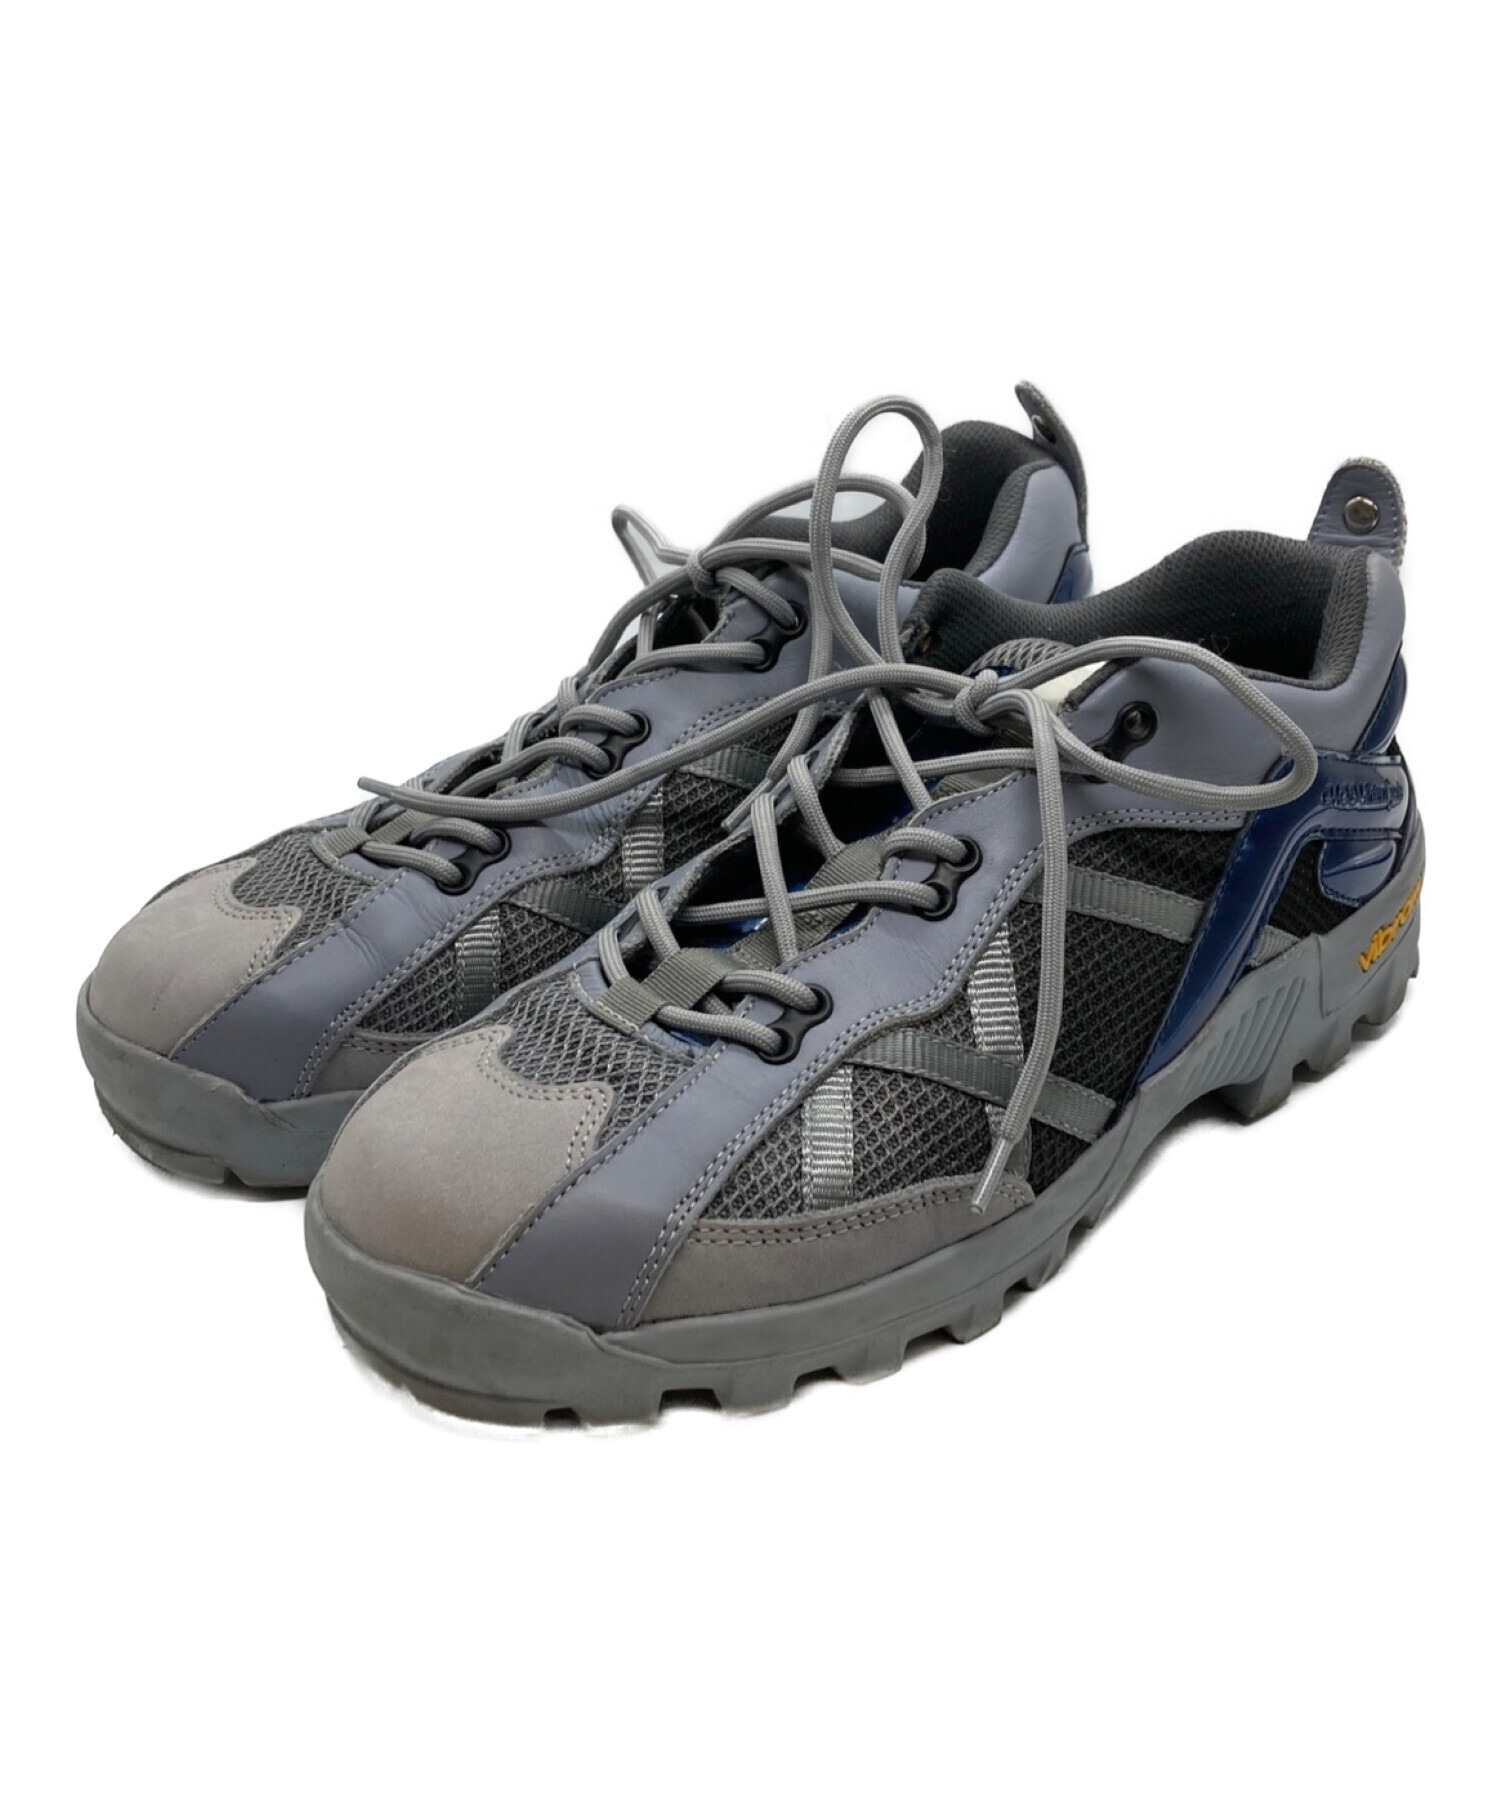 最新品特価OAO VIRTUAL PEAK (Black) 5.0 靴